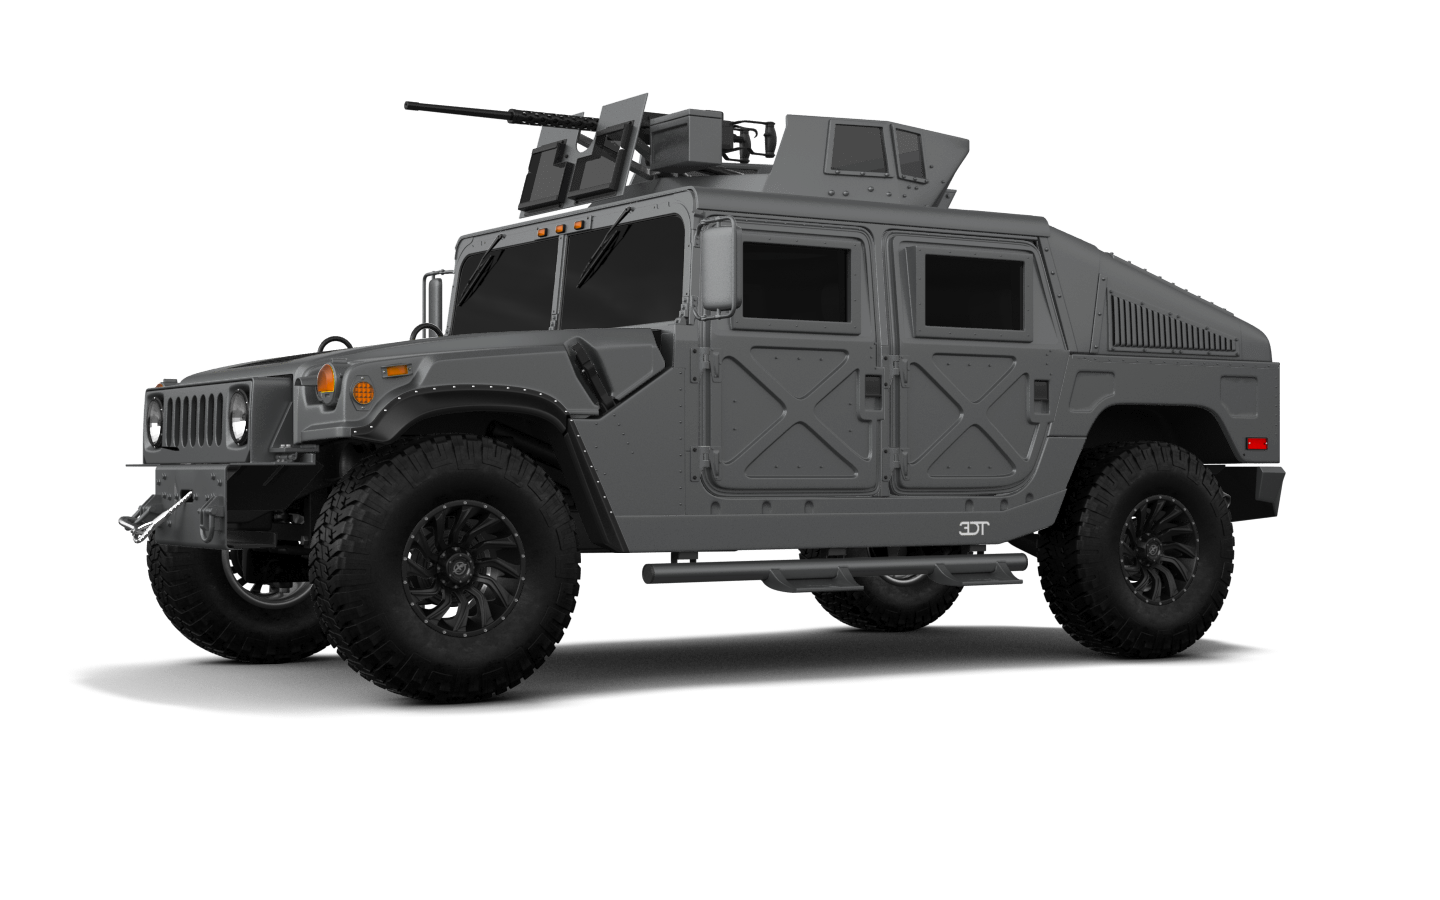 Humvee, HMMWV  PNG